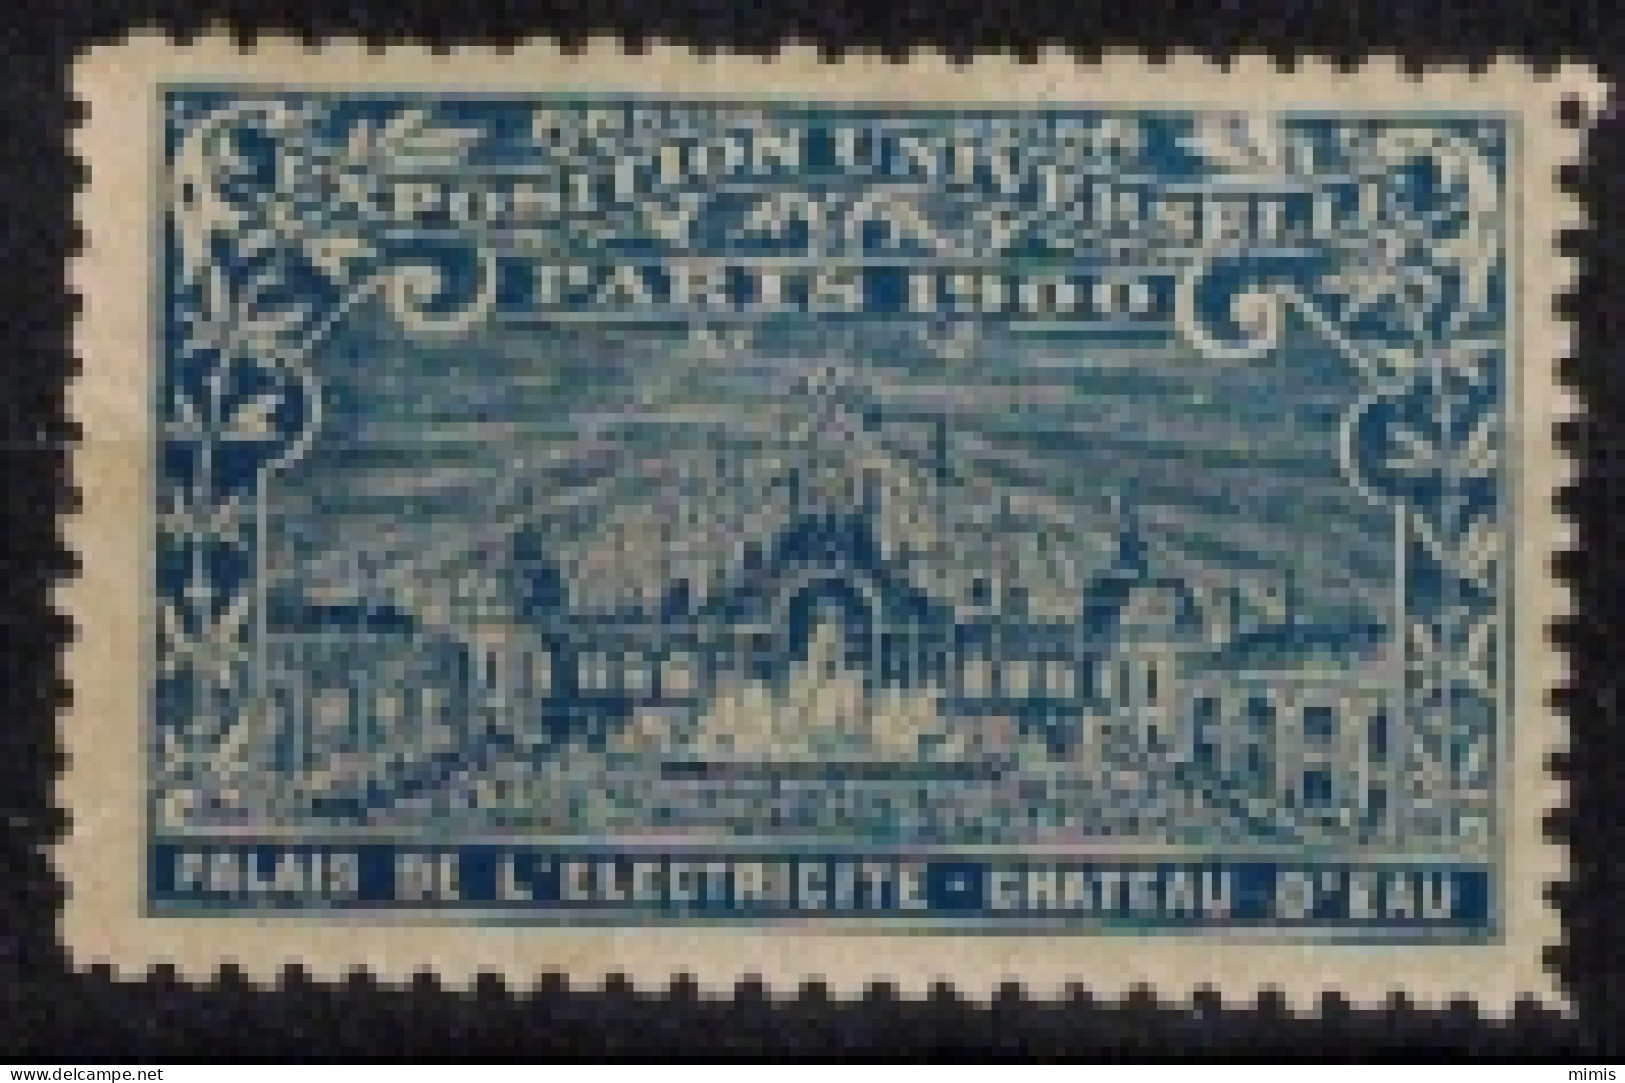 FRANCE     VIGNETTES      Exposition Universelle Paris 1900   Palais De L'Electricité - Chateau D'Eau - Turismo (Viñetas)